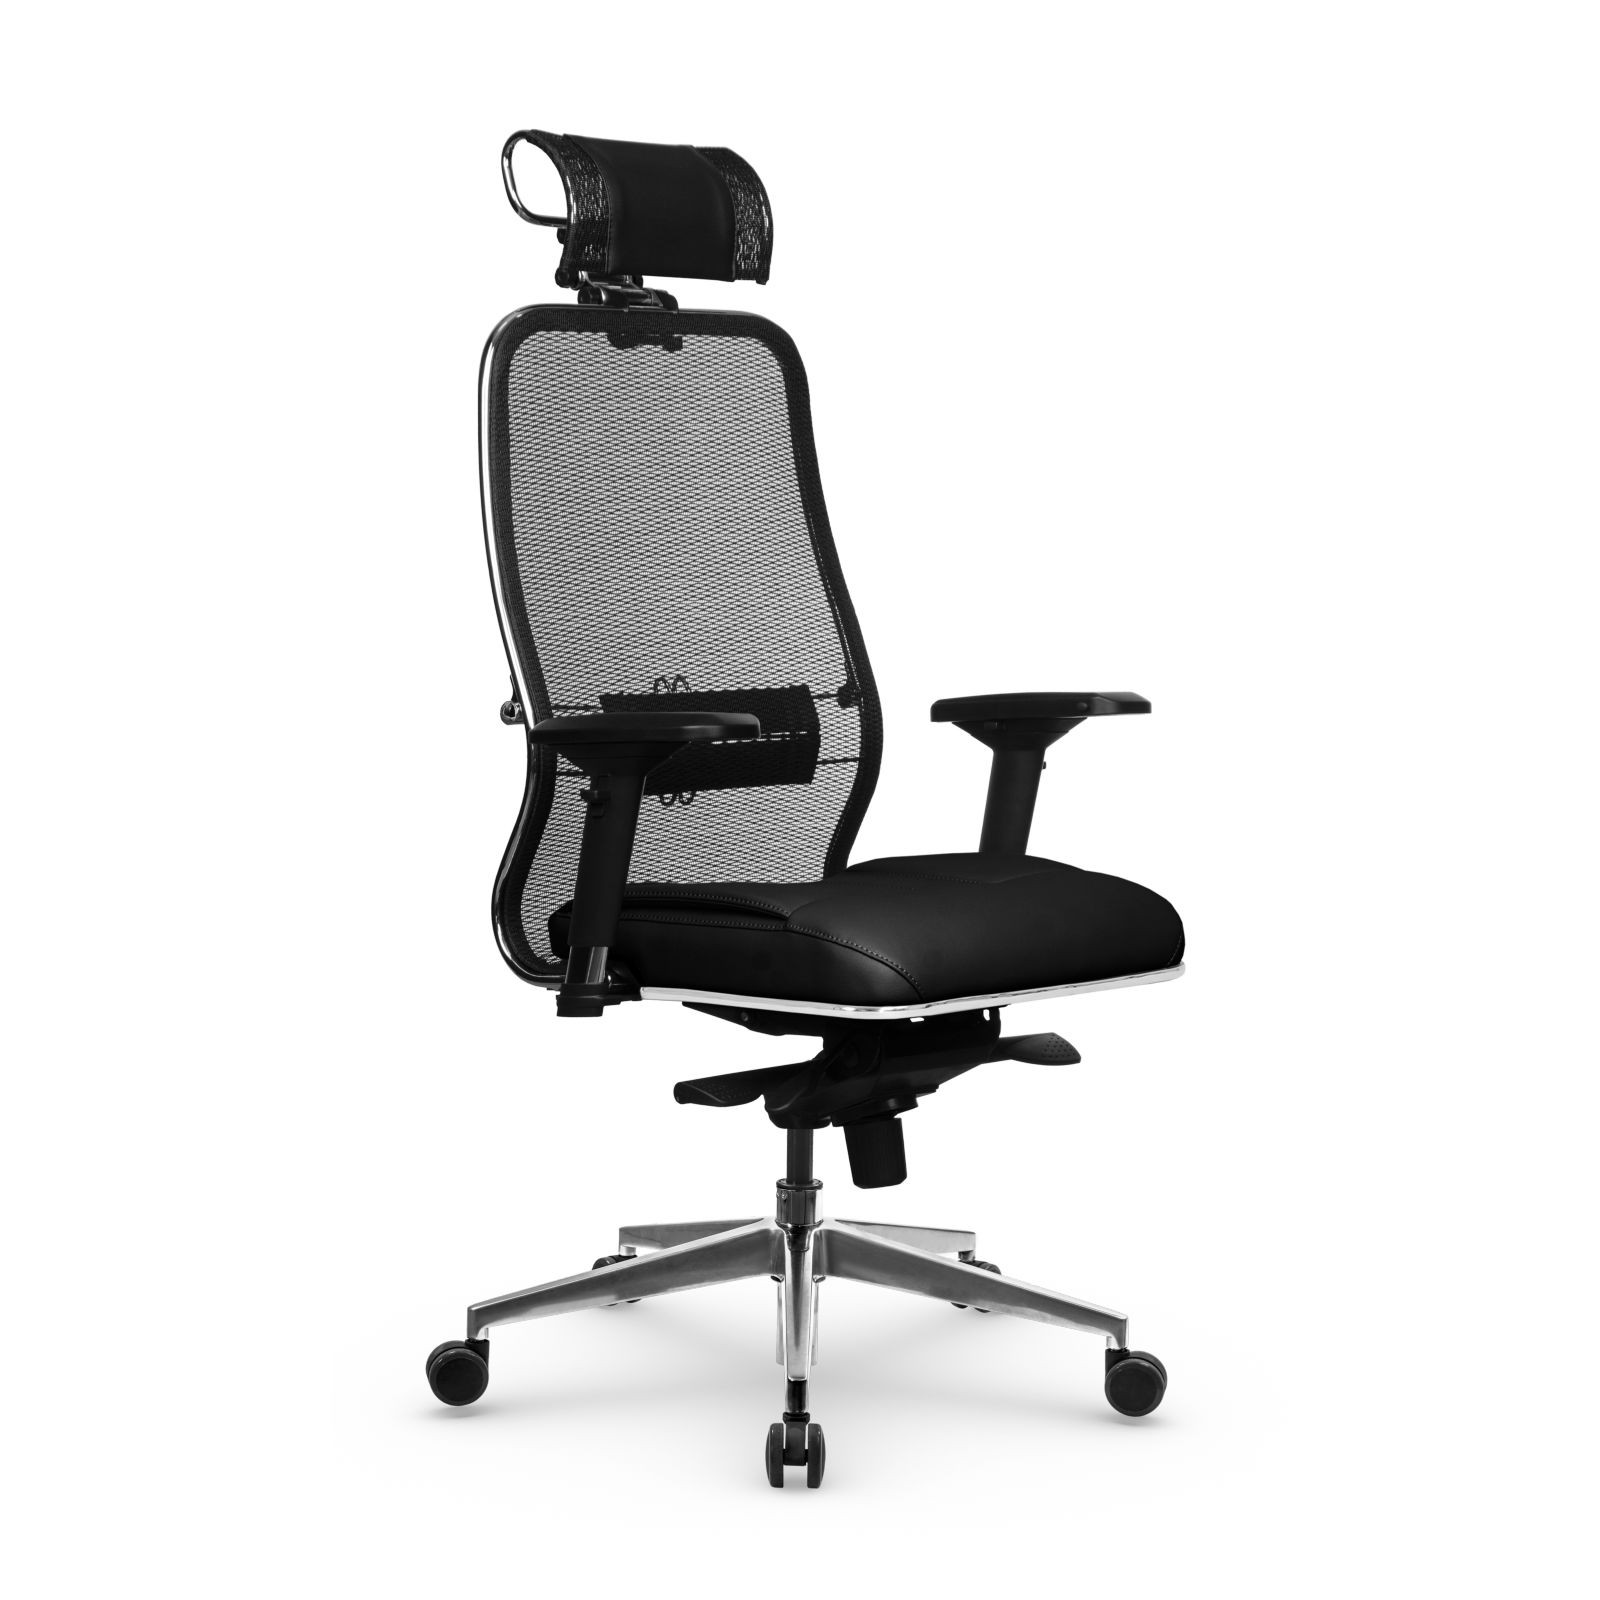 Кресло Samurai SL-3.041 MPES, кресло офисное, кресло компьютерное, кресло для дома и офиса, кресло Metta (Черный)